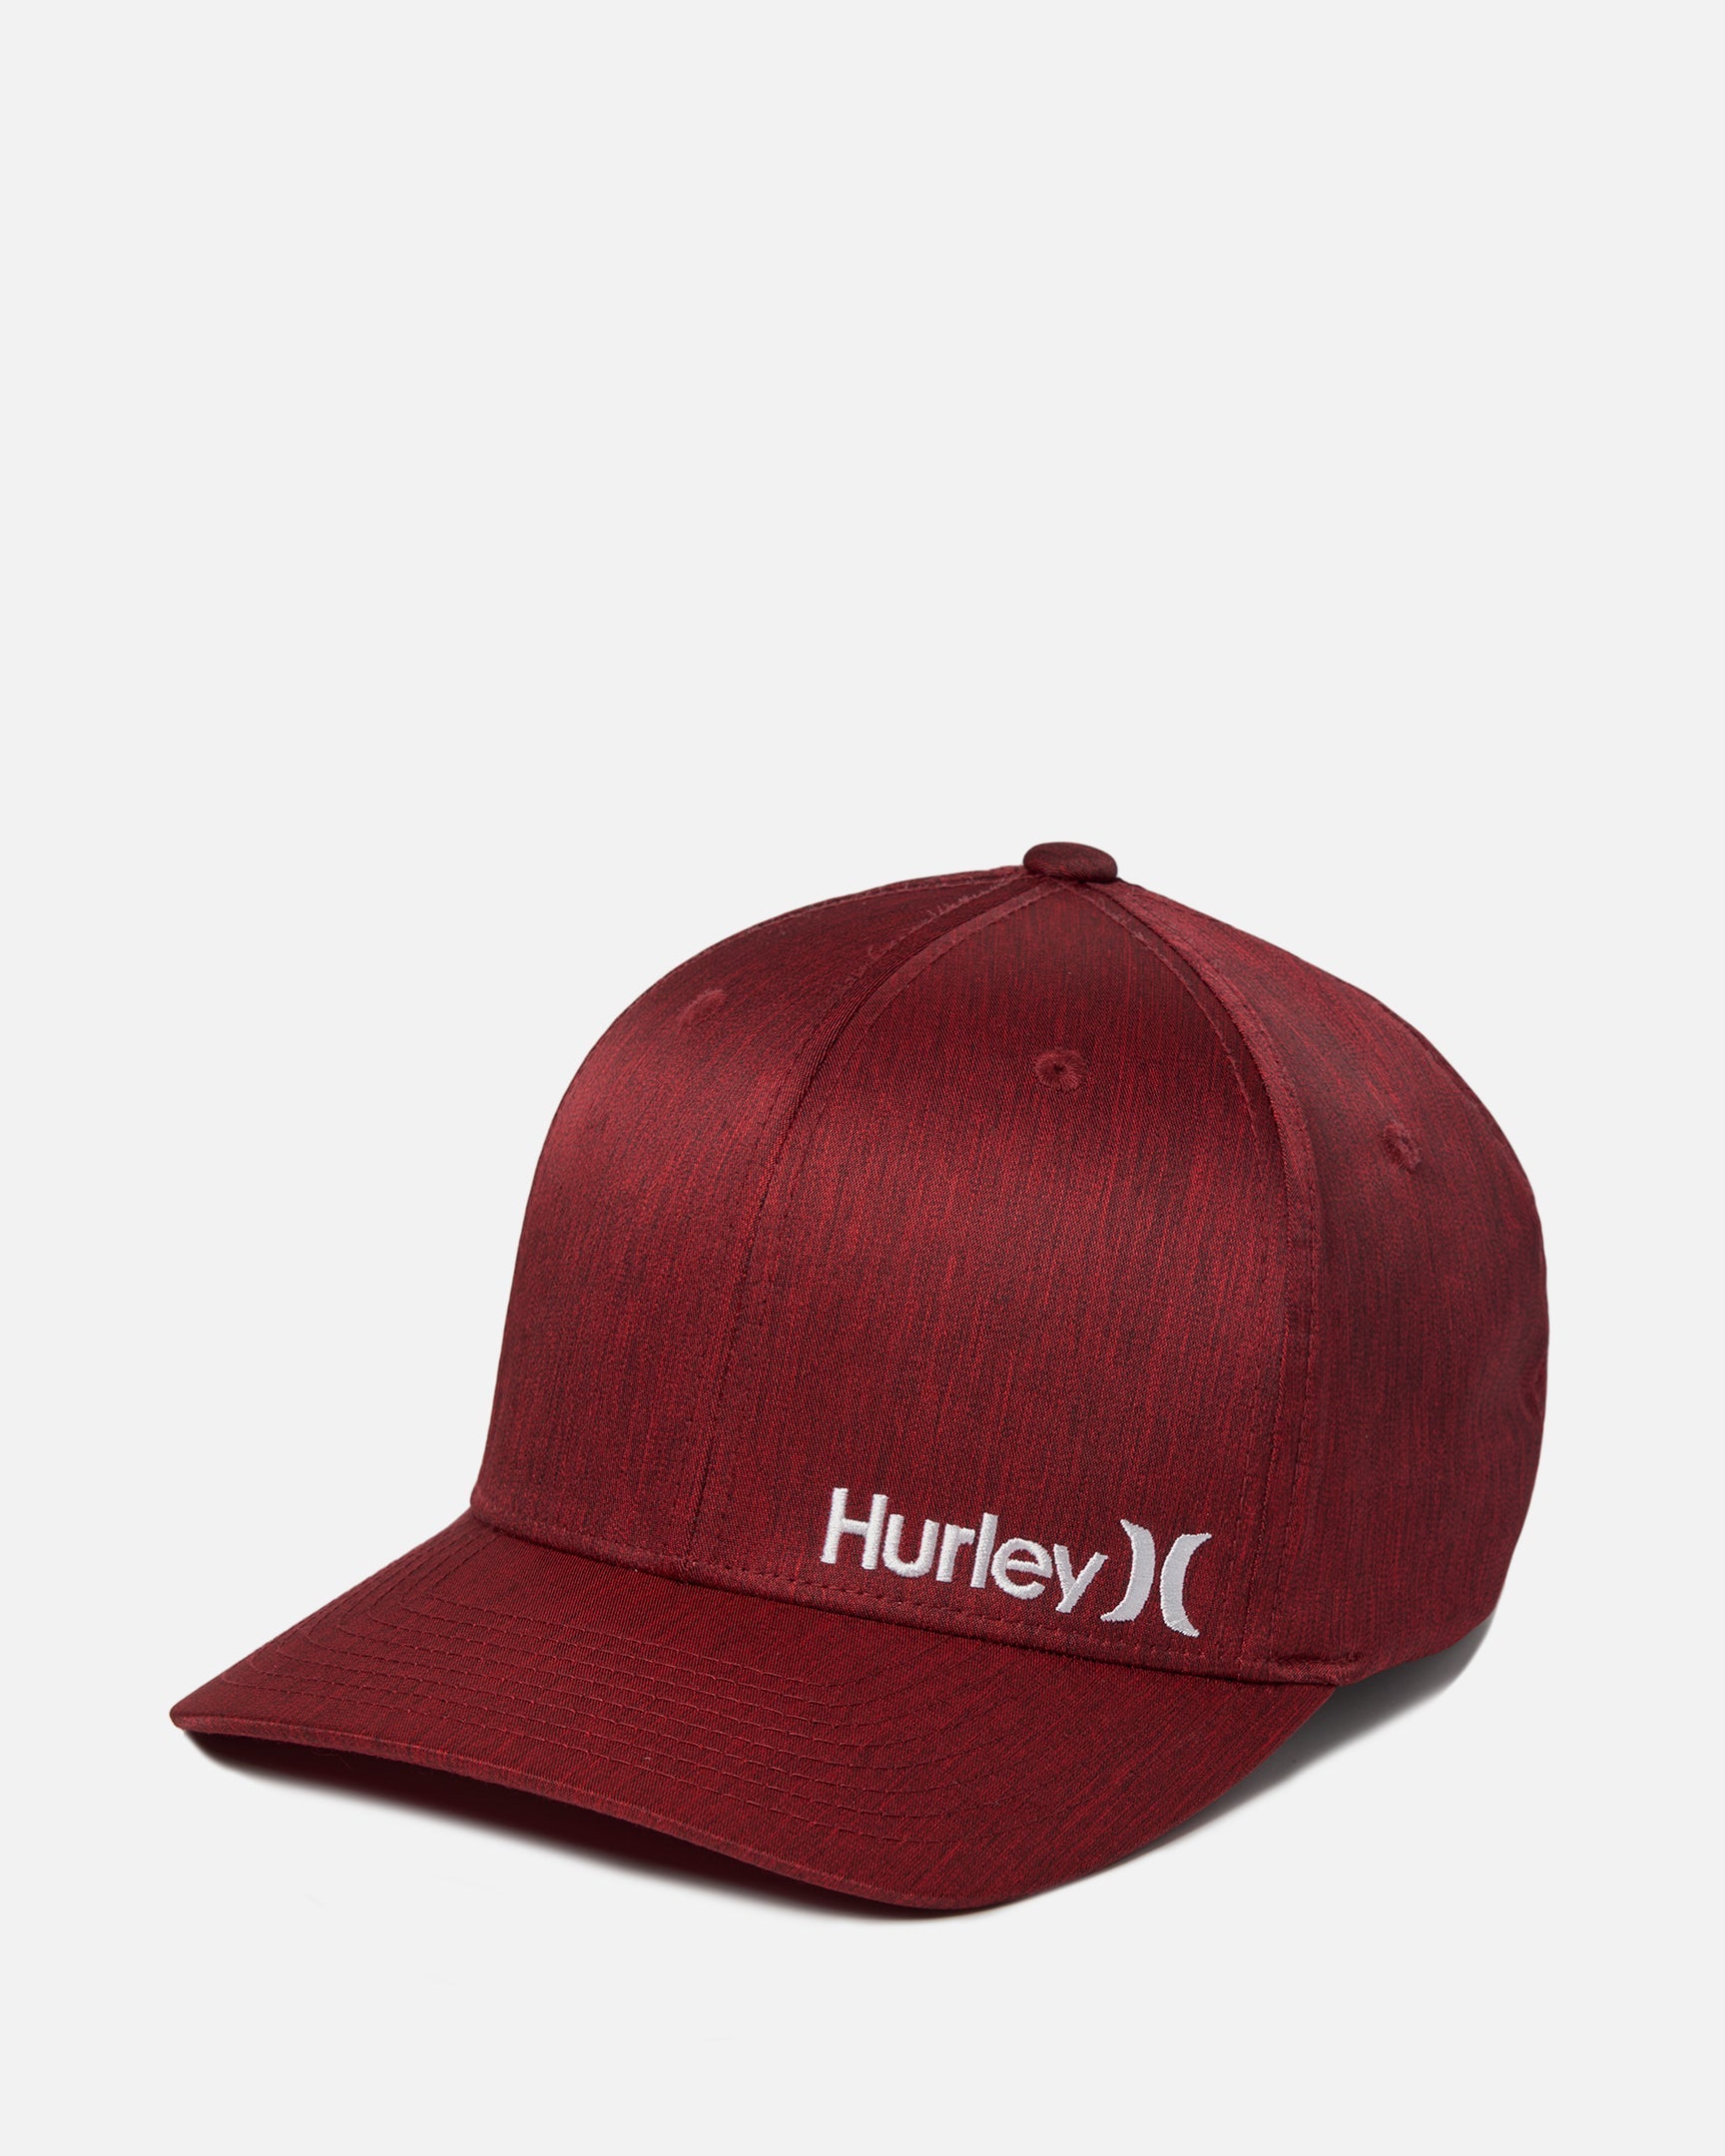 Supply Men's Corp Textures Hat In Burgundy